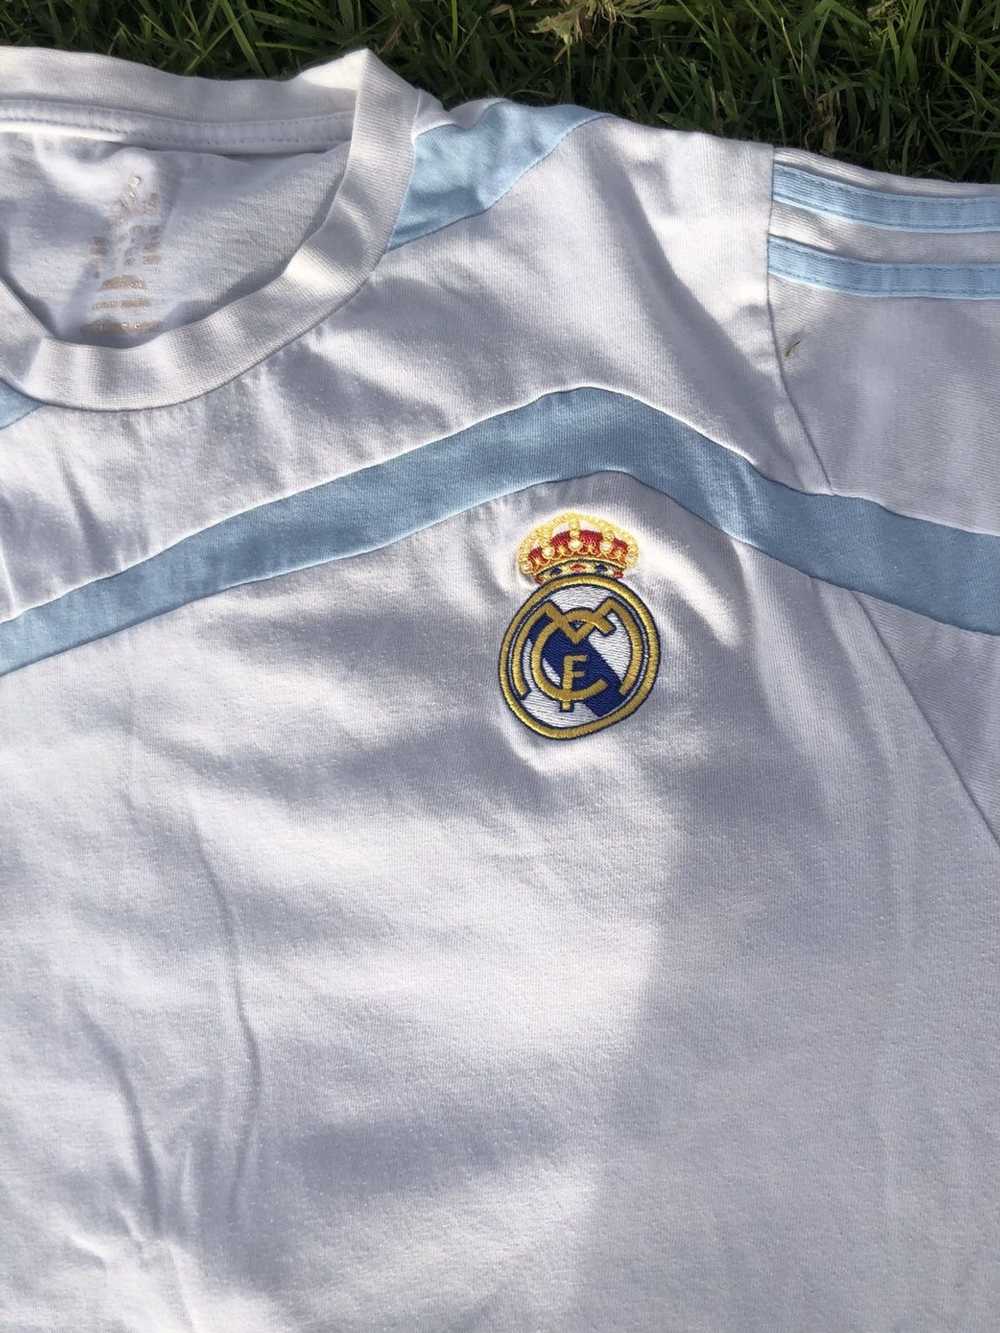 Adidas × Real Madrid Real Madrid shirt - image 3